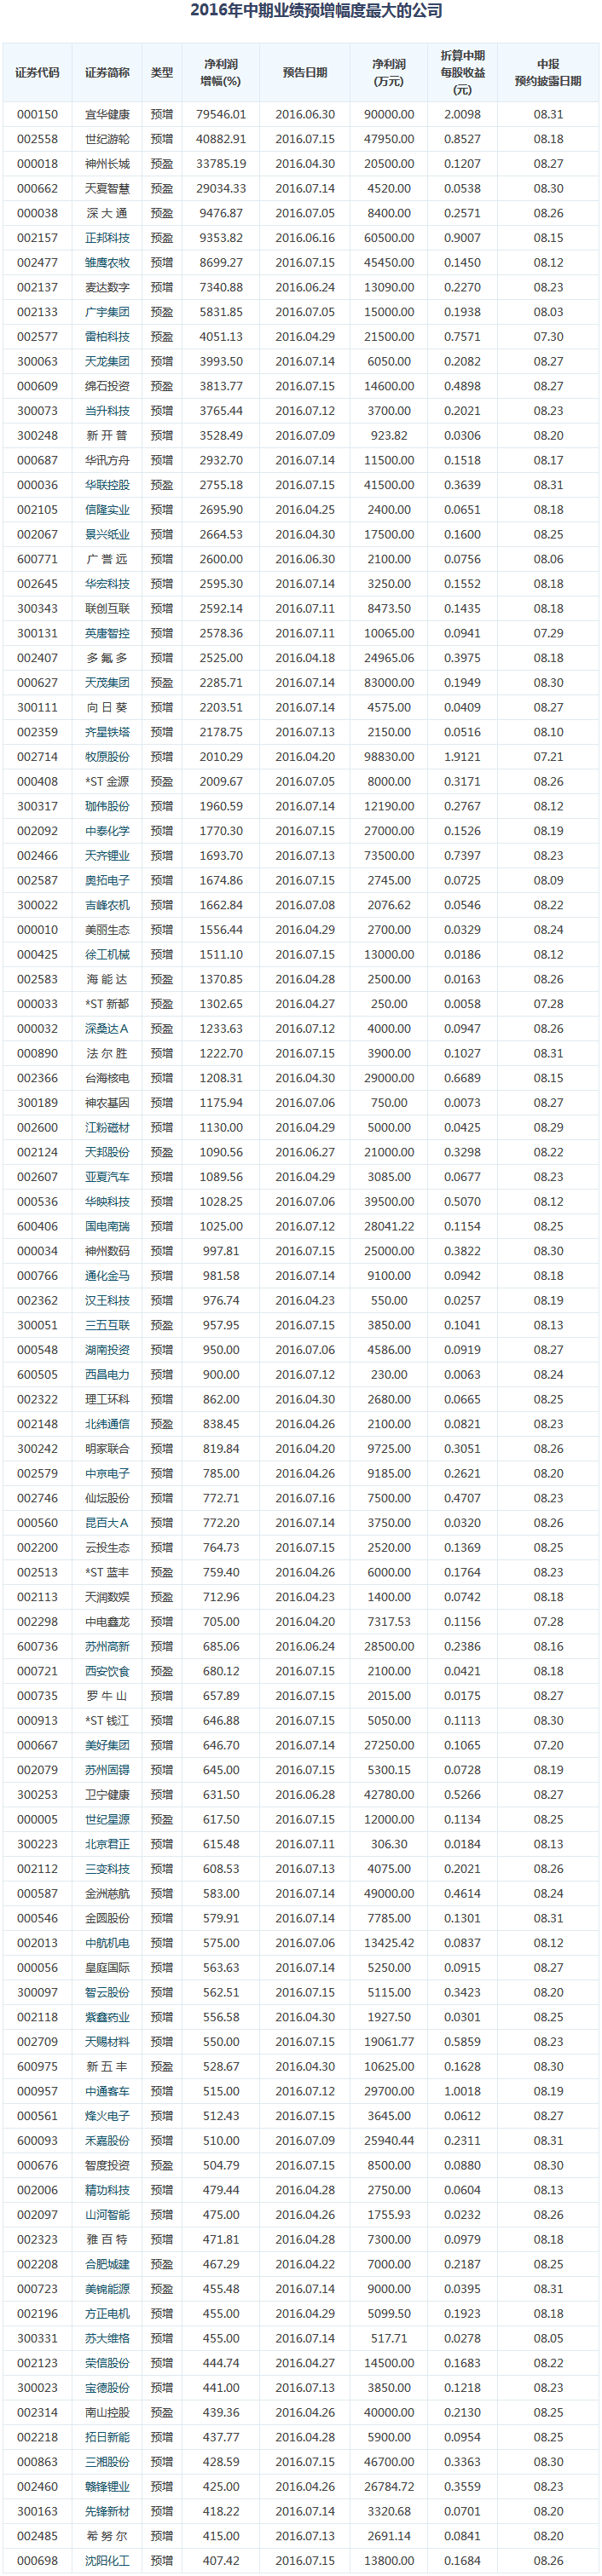 沪深股市1780家上市公司公布中报预告（截至7月18日）